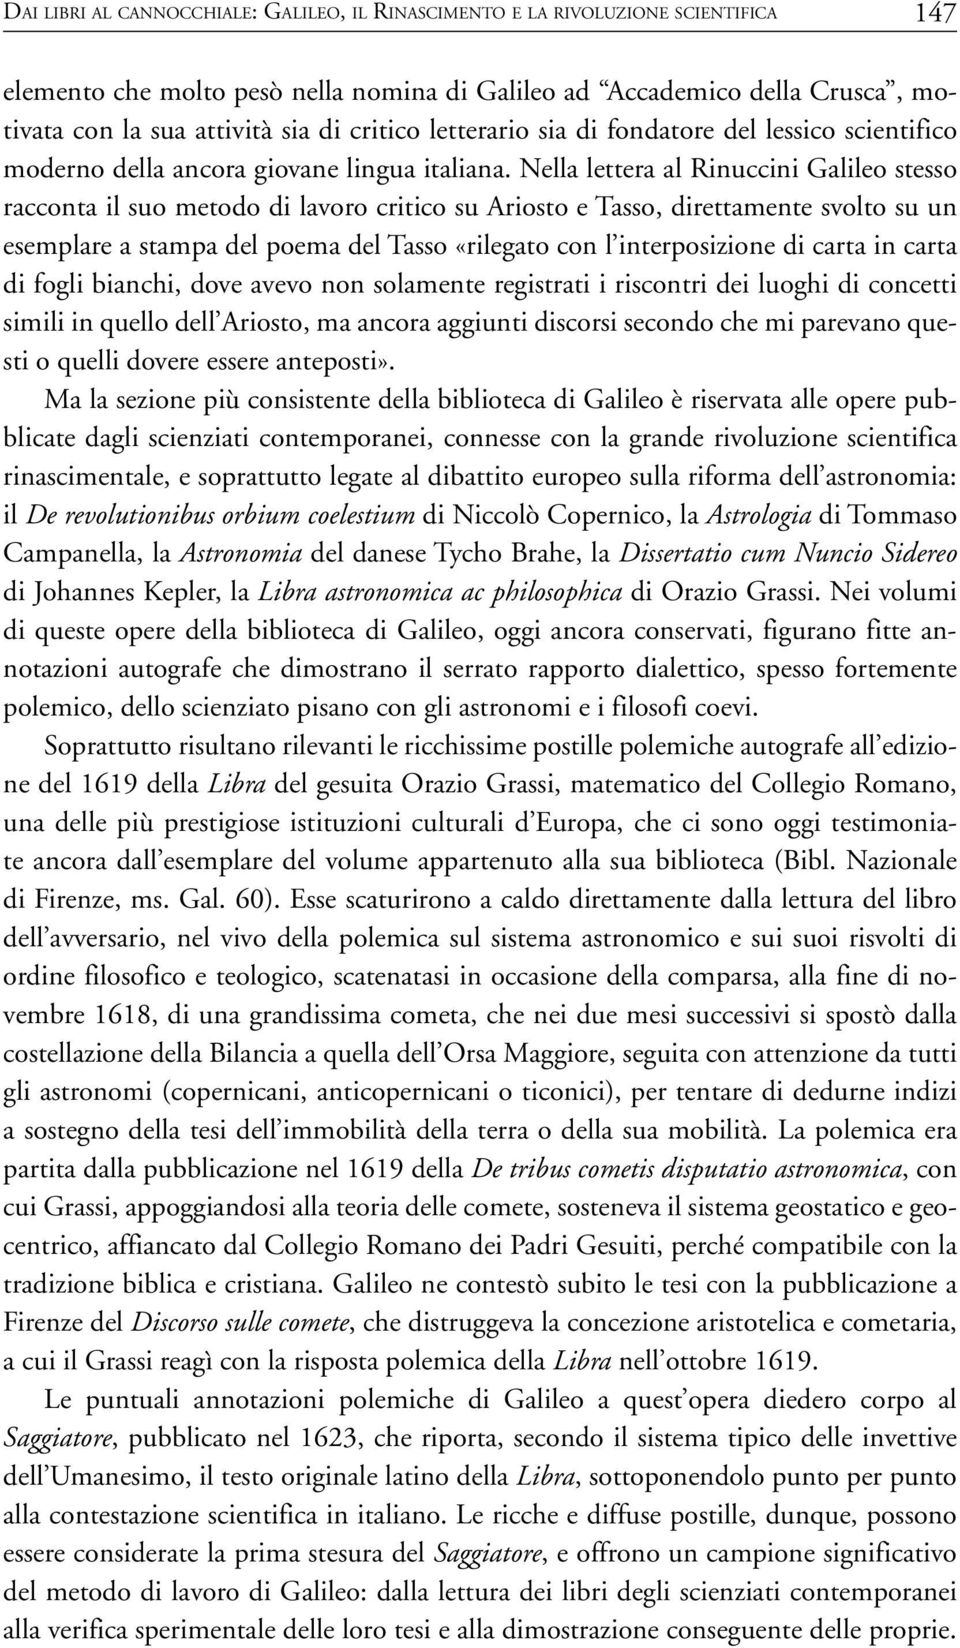 Nella lettera al Rinuccini Galileo stesso racconta il suo metodo di lavoro critico su Ariosto e Tasso, direttamente svolto su un esemplare a stampa del poema del Tasso «rilegato con l interposizione